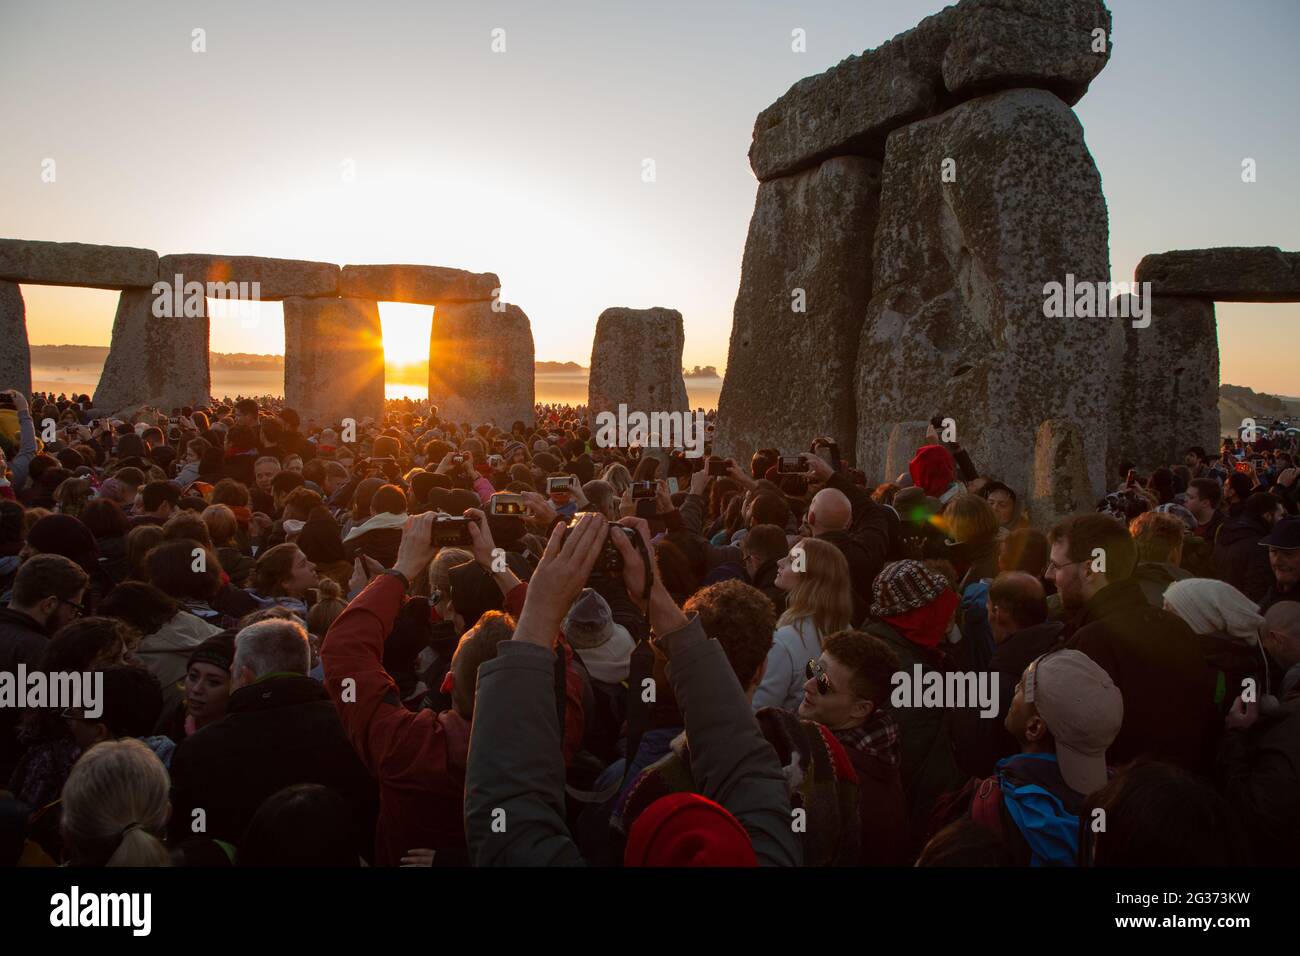 Les premiers rayons du soleil entrent dans le cercle intérieur du monument néolithique Stonehenge sur la plaine de Salisbury le jour du solstice. Angleterre, Royaume-Uni. Banque D'Images